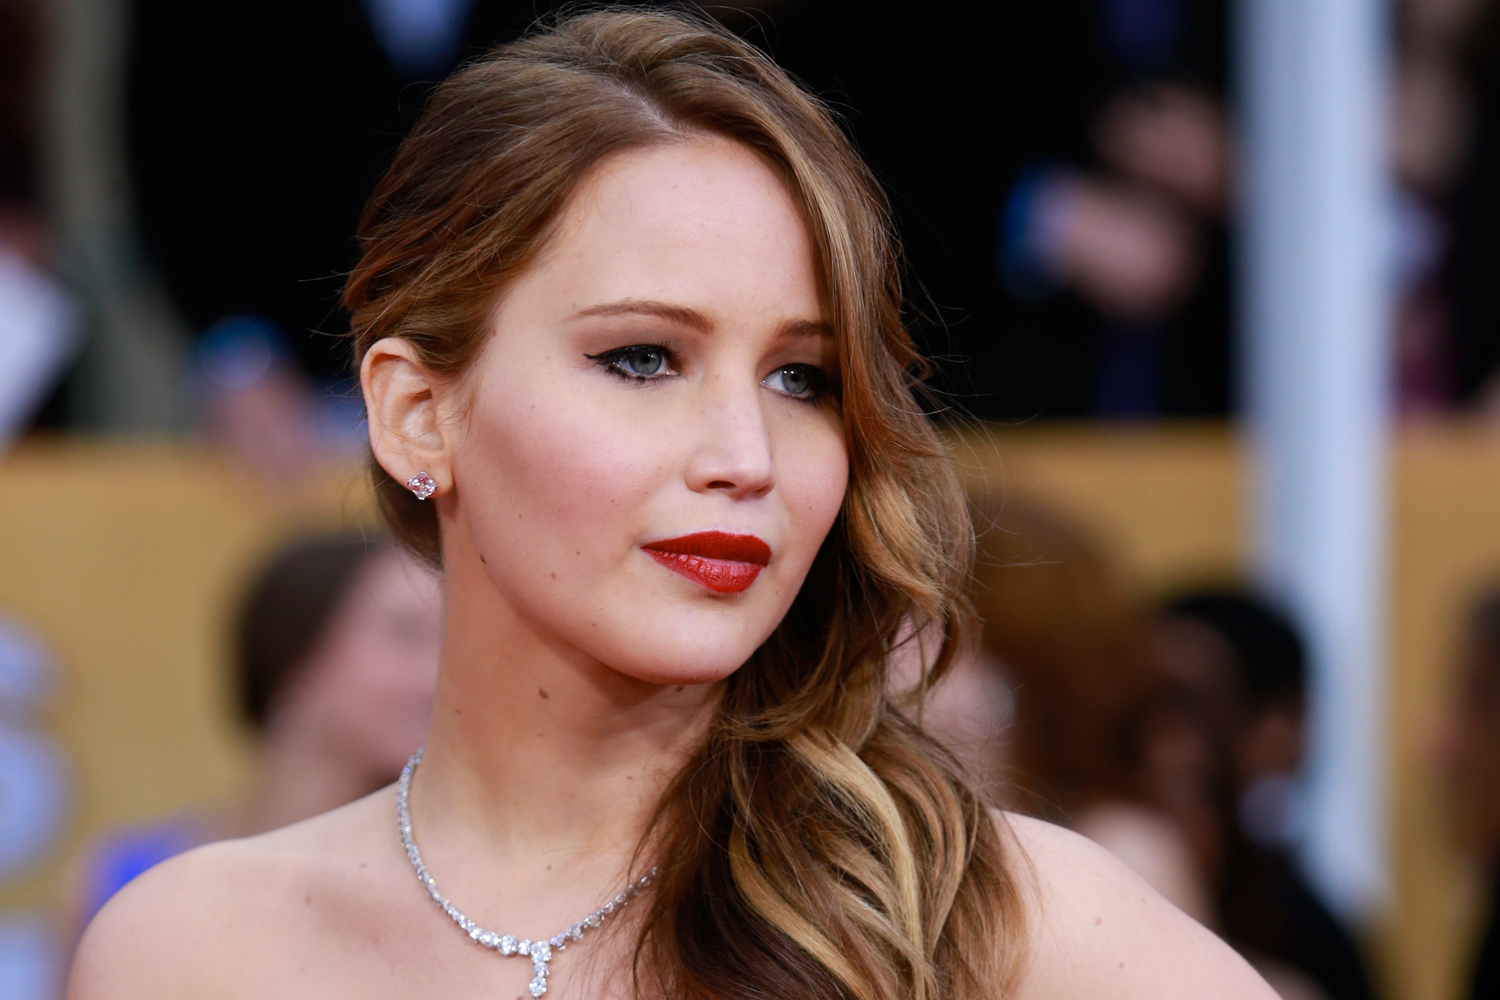 Filtración masiva en Internet de fotos íntimas de Jennifer Lawrence y otras actrices